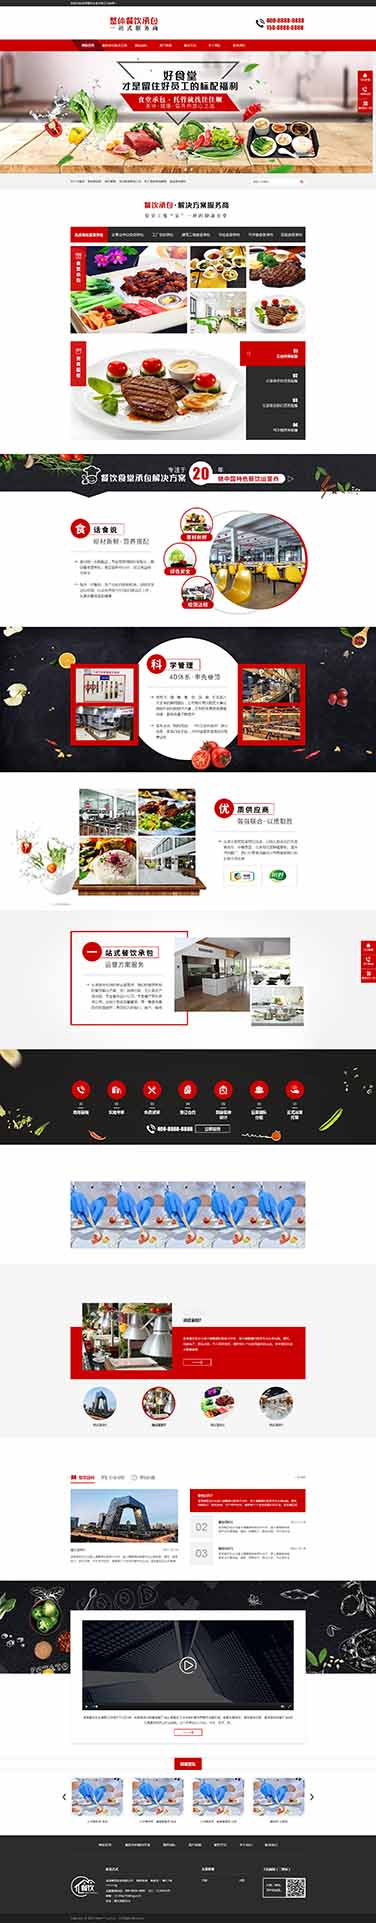 食堂餐饮承包公司营销型网站模板